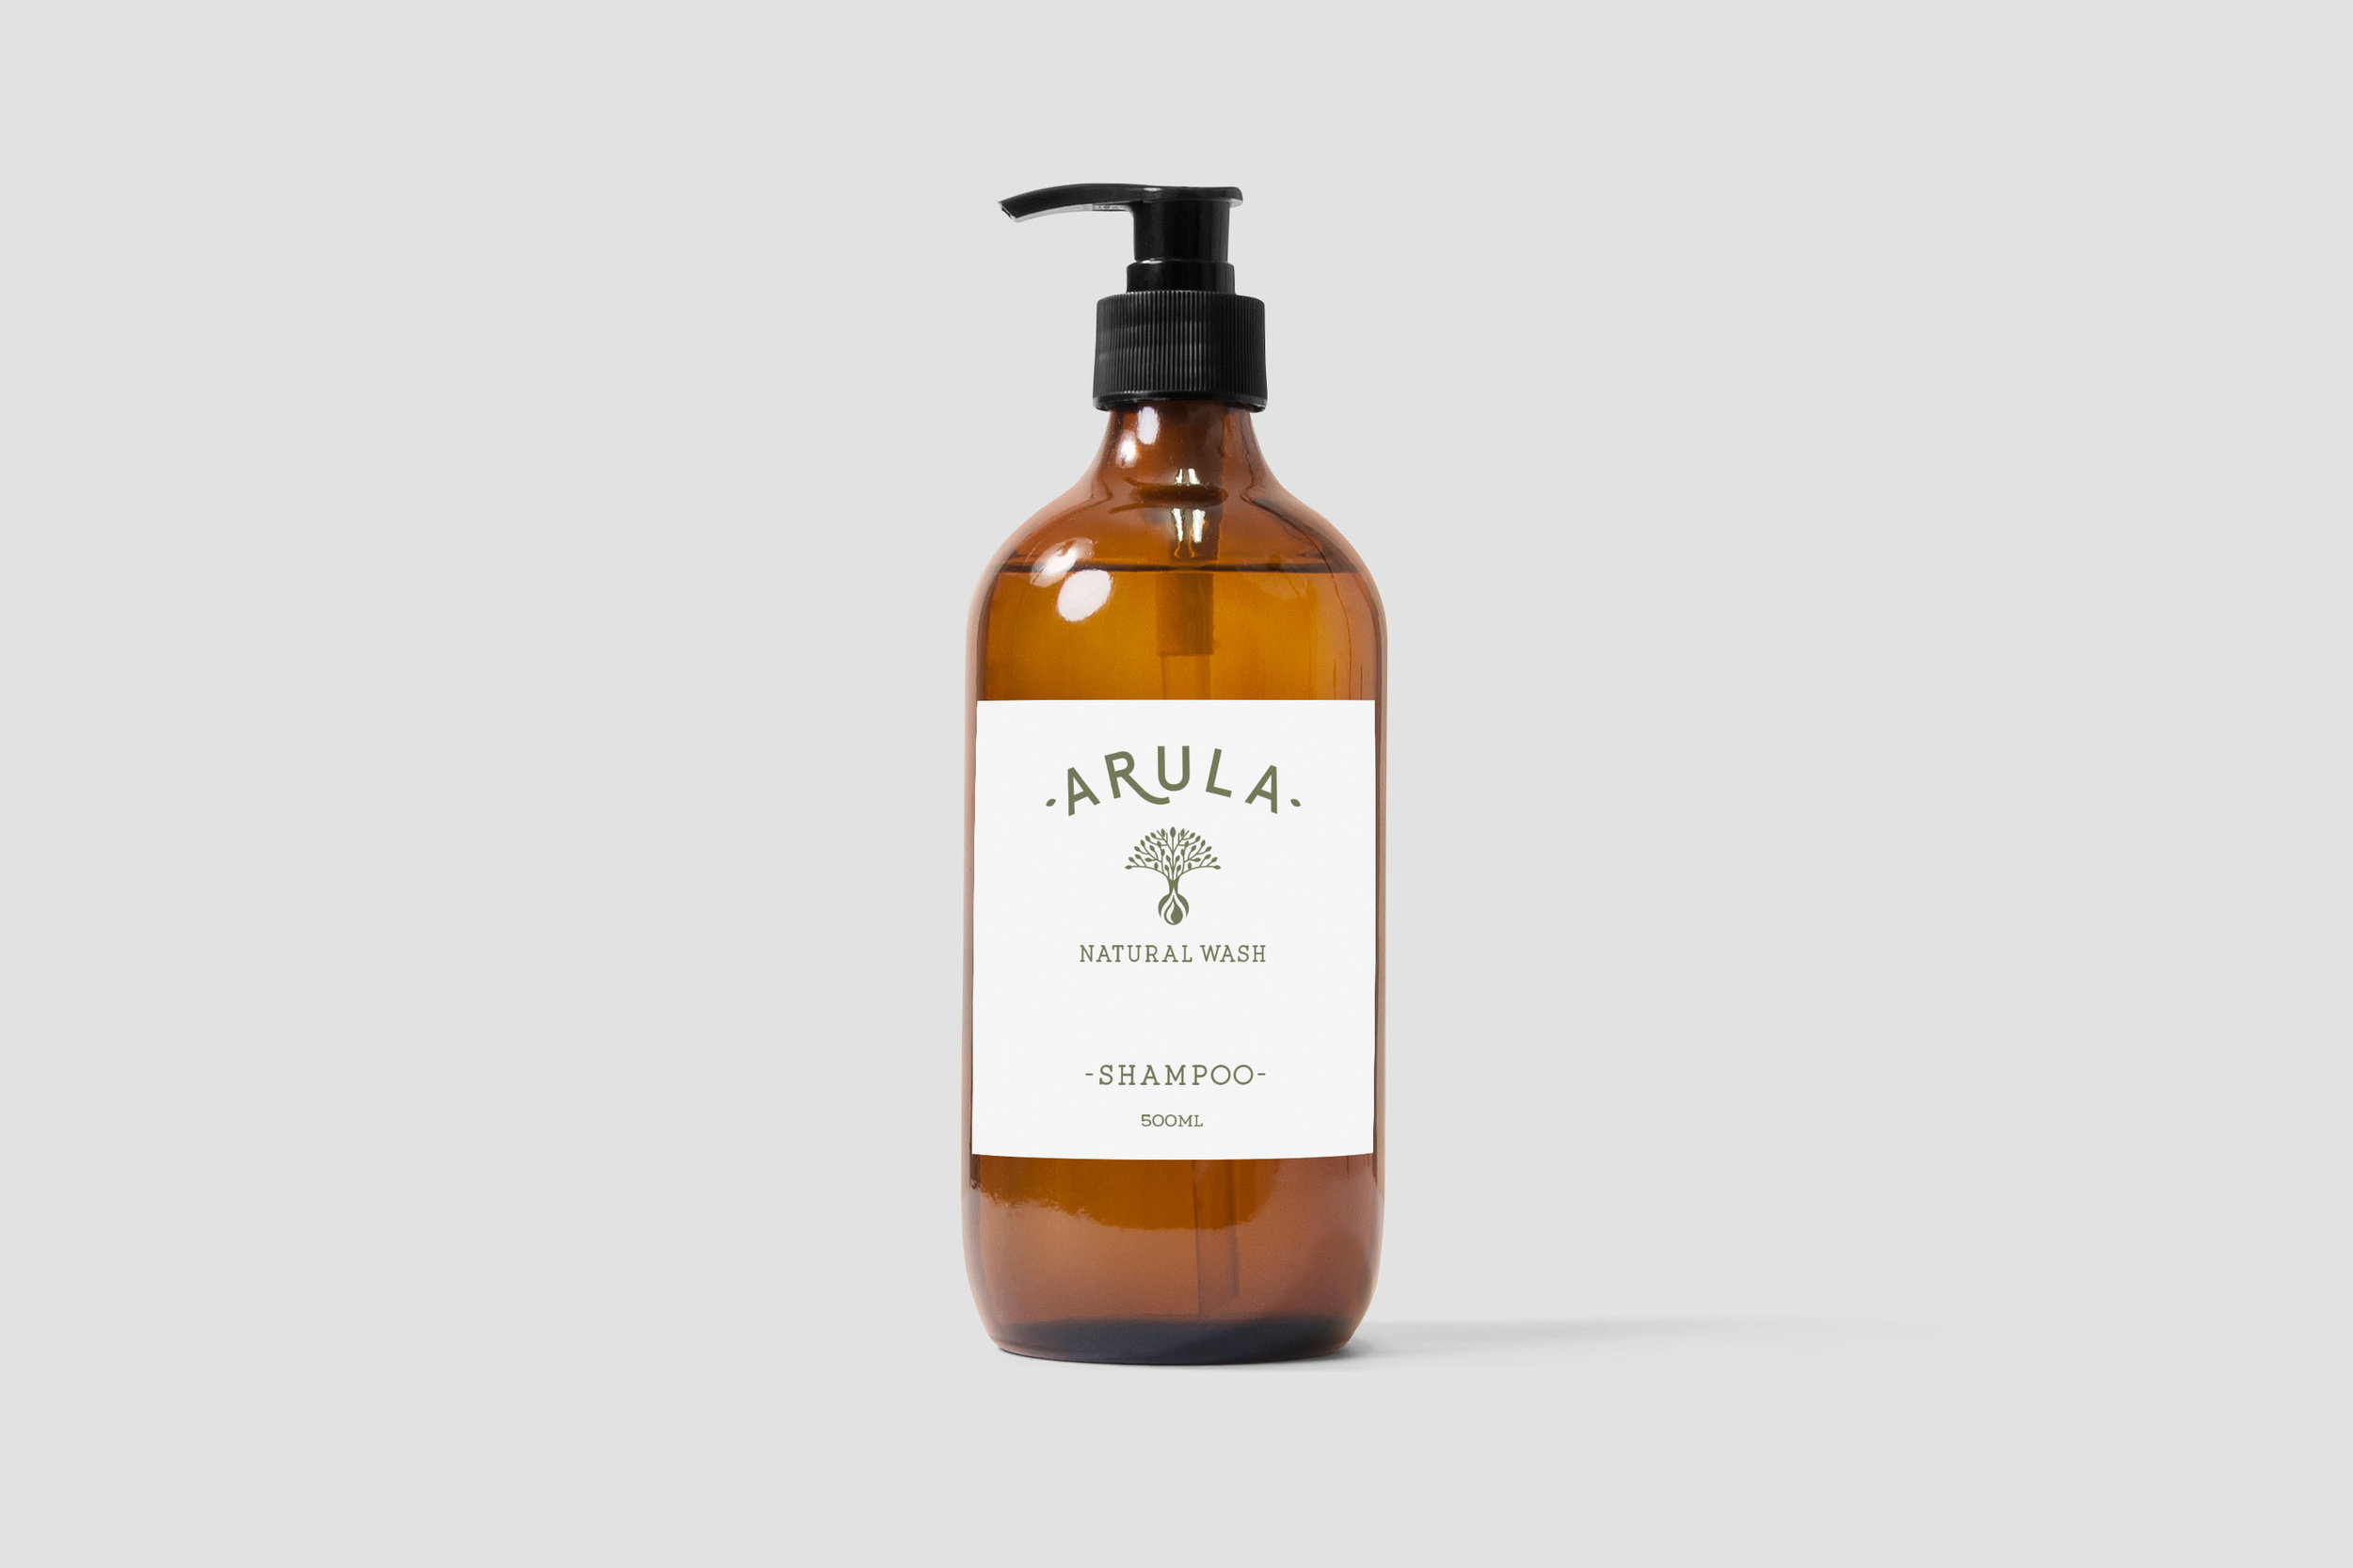 Packaging-designer-Shampoo label bottle design 